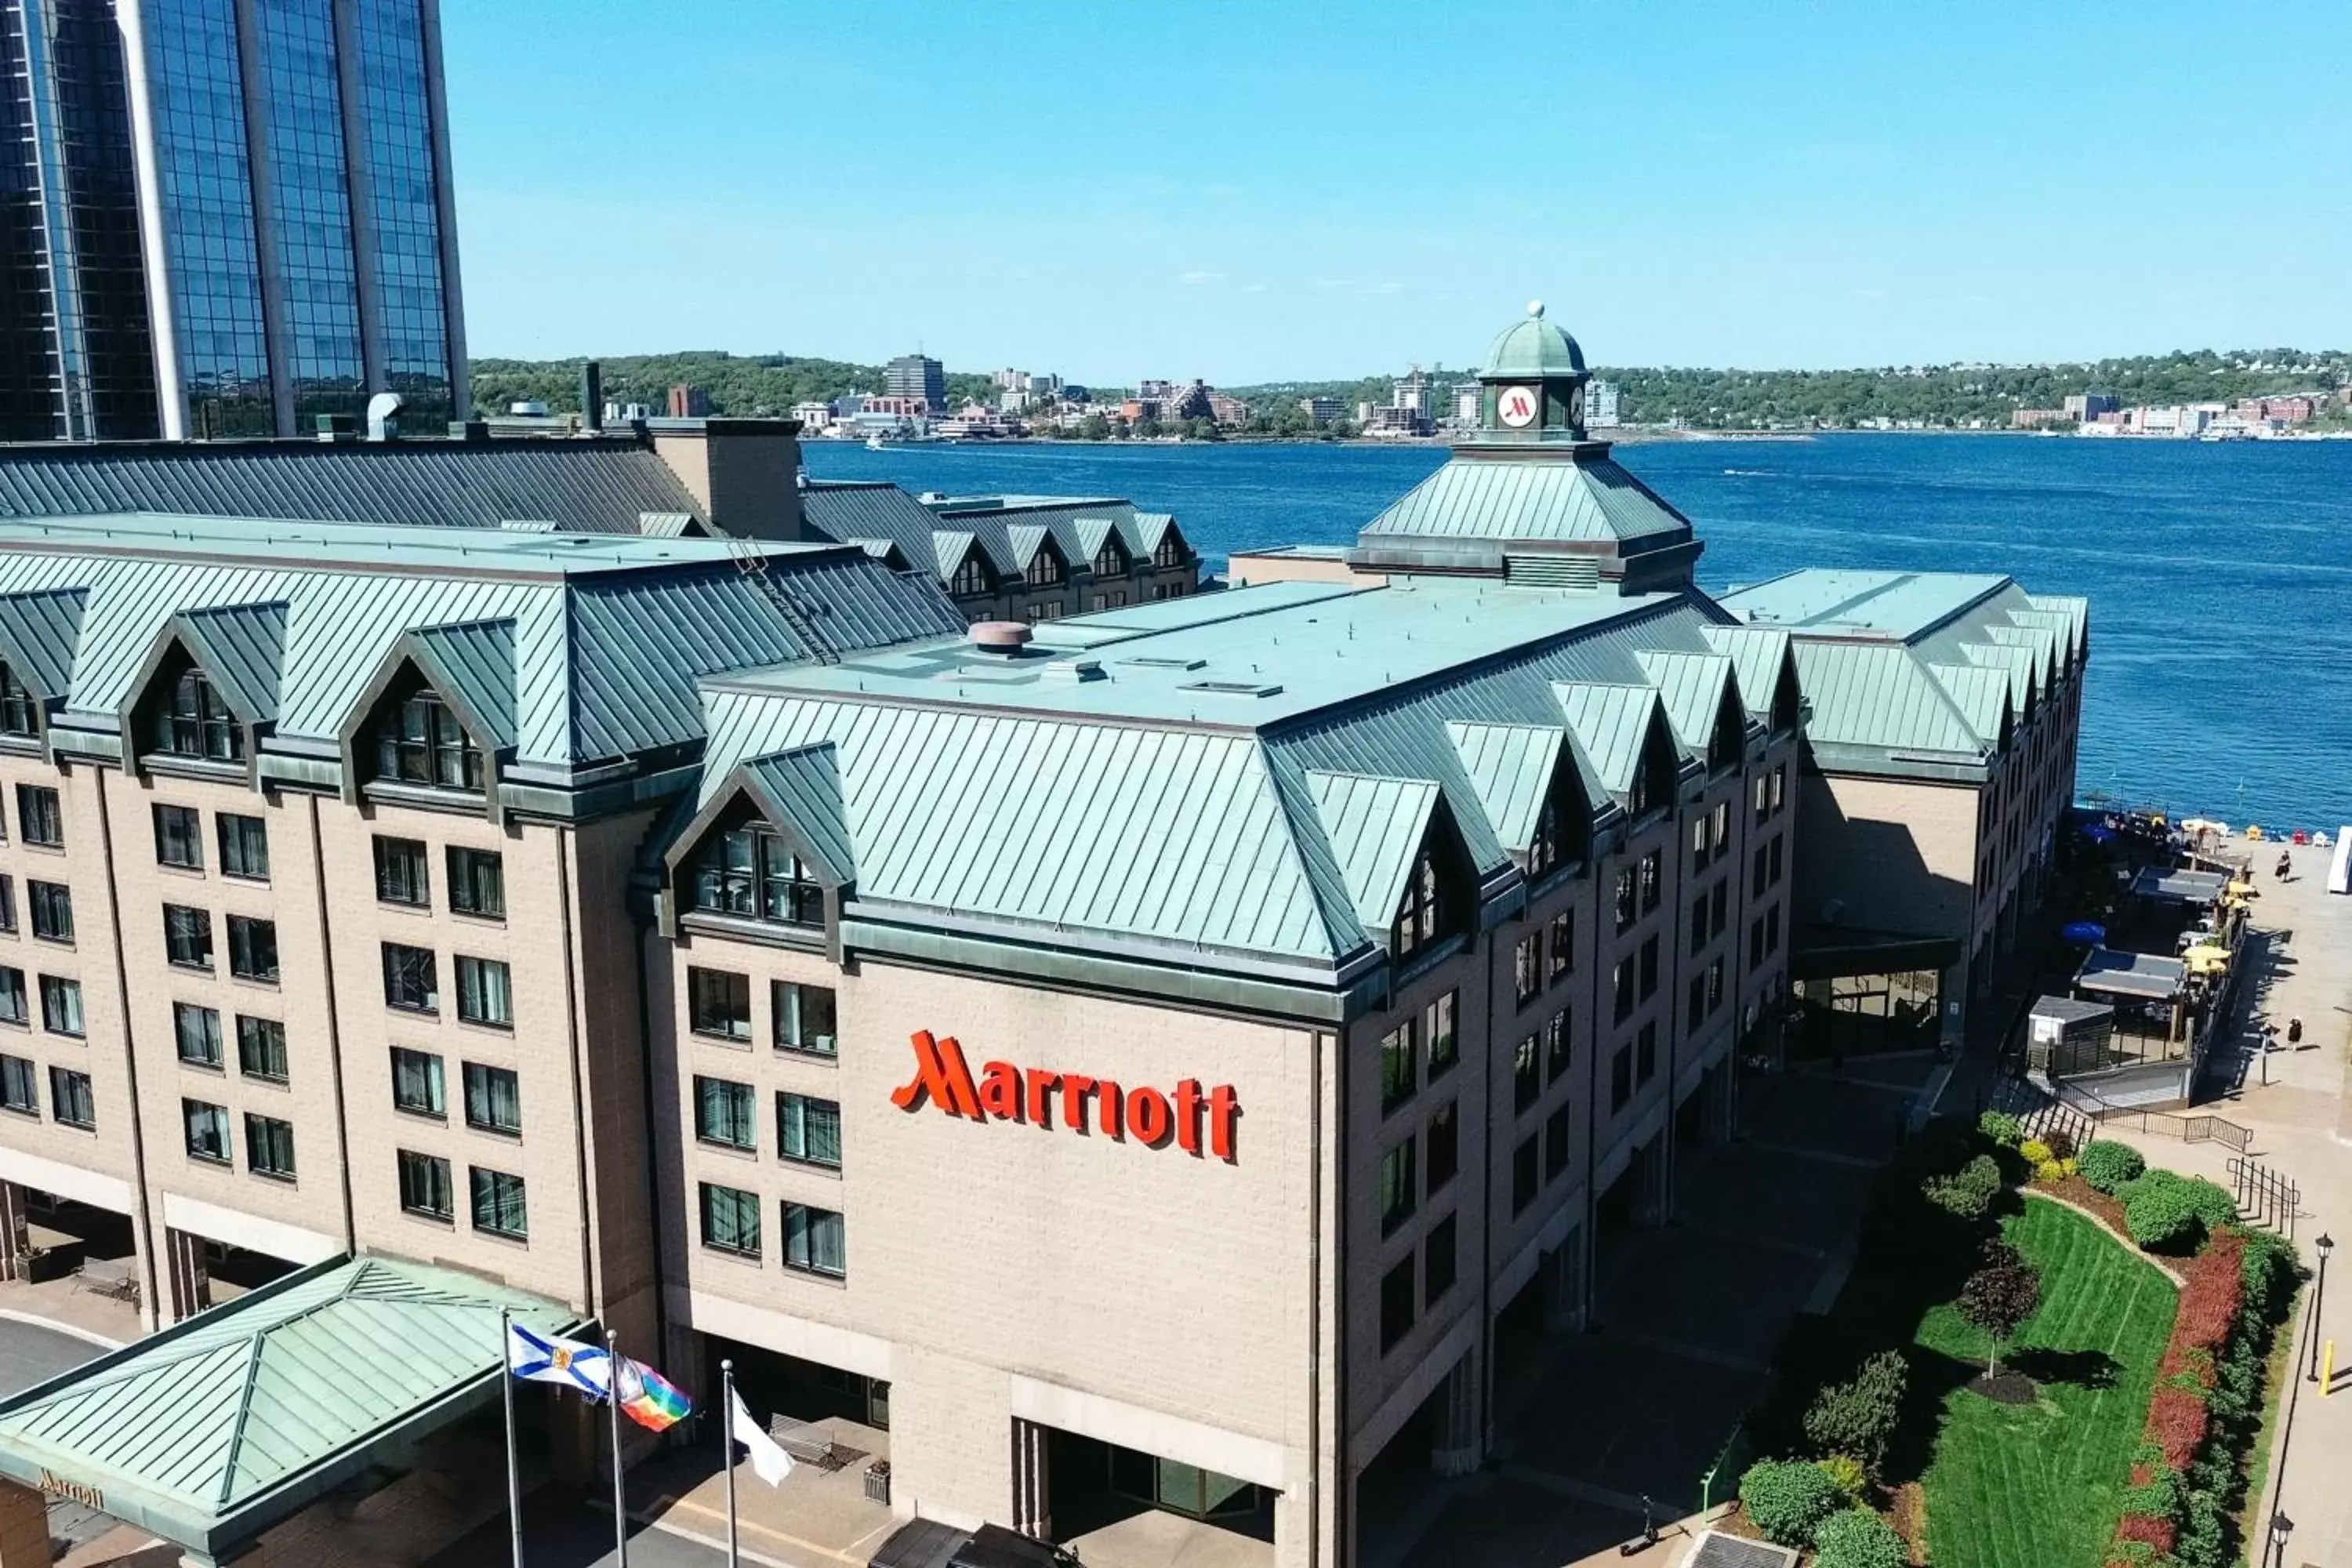 Property building in Halifax Marriott Harbourfront Hotel